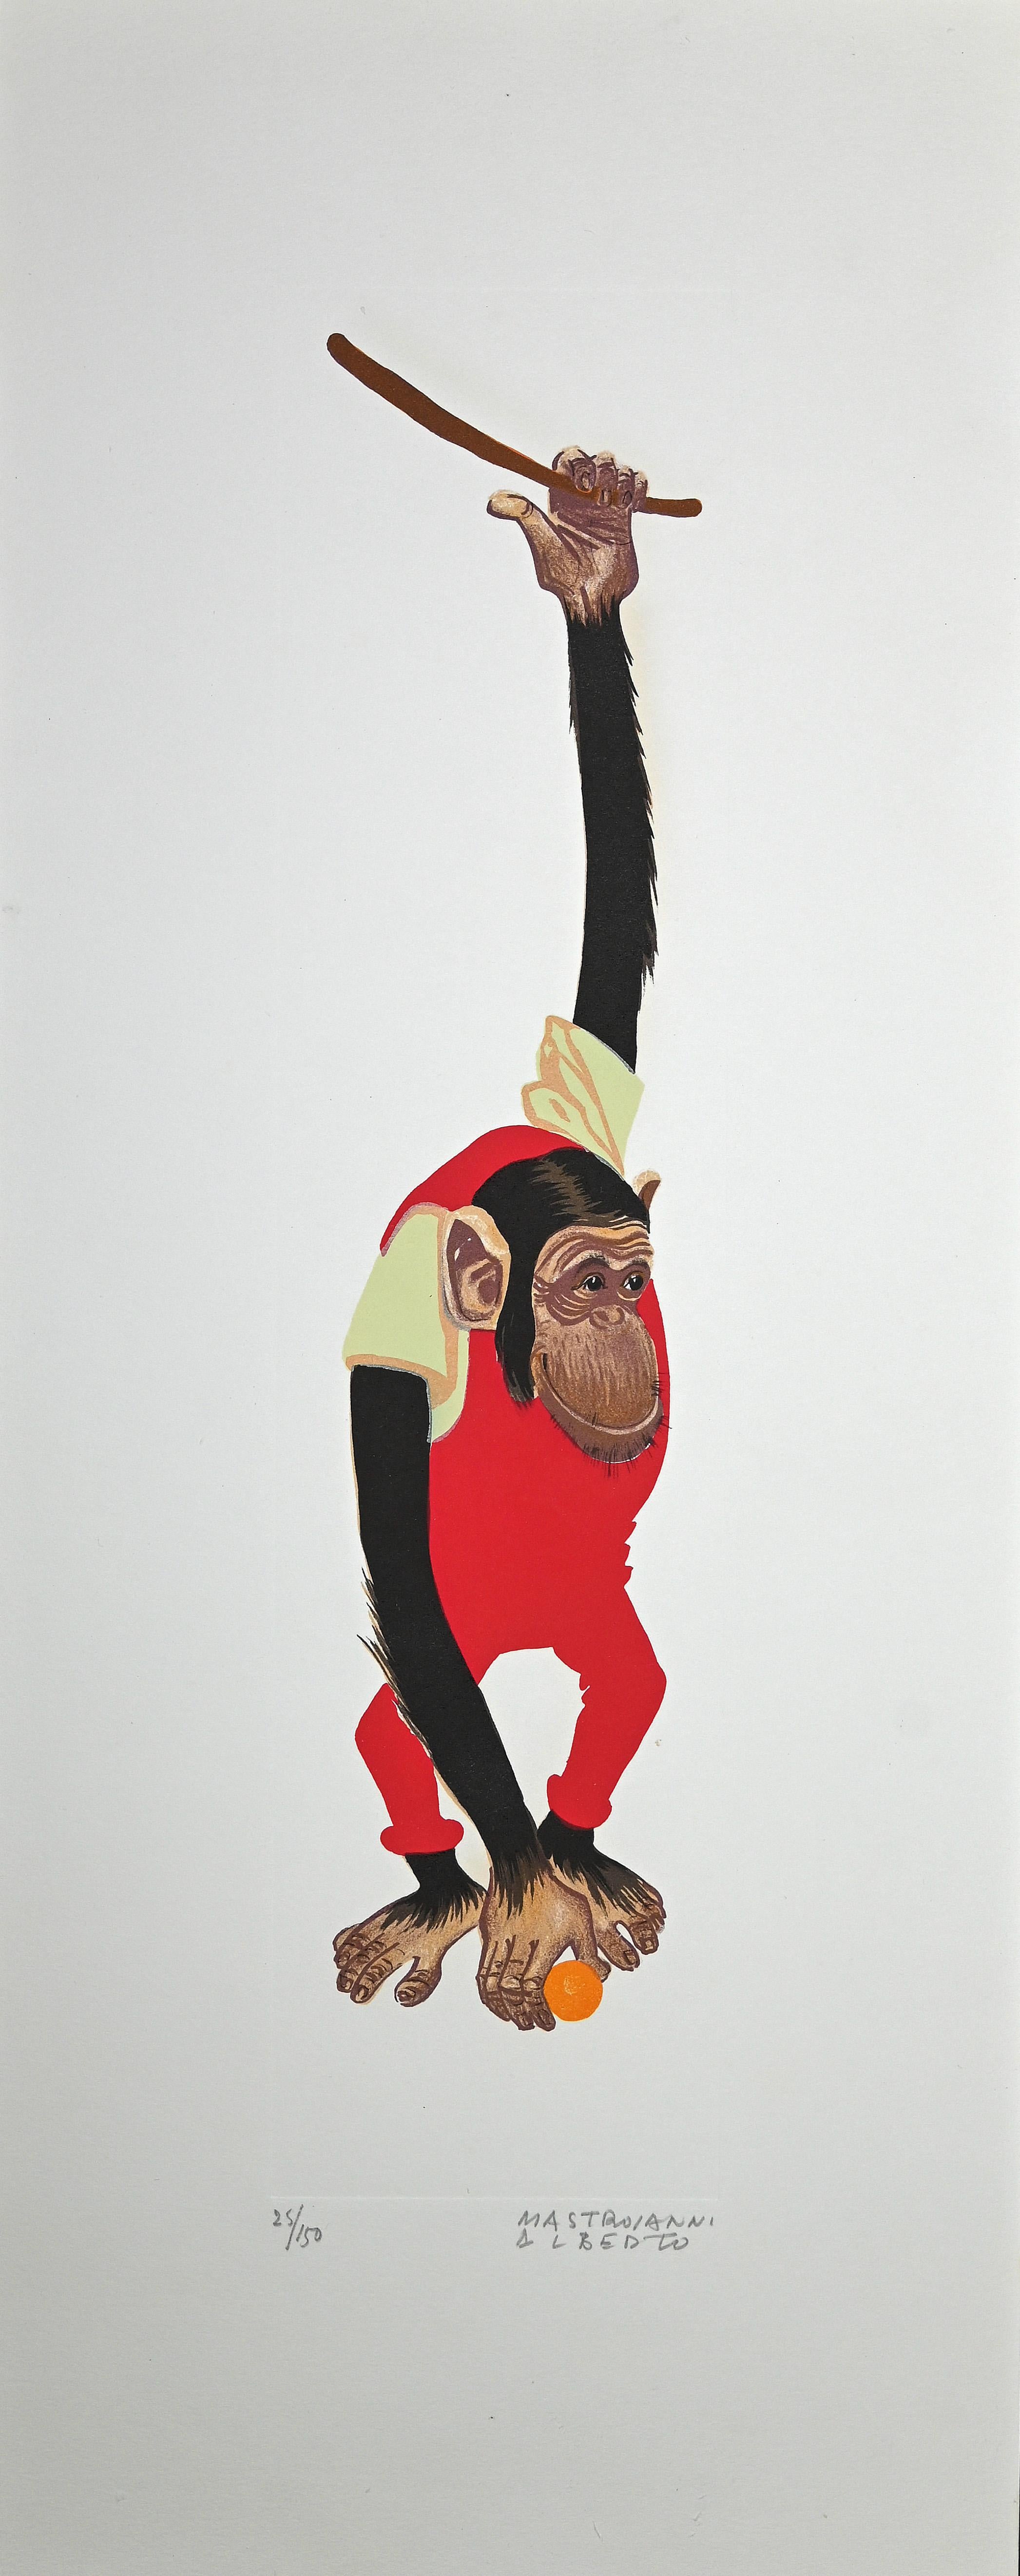 Monkey - Lithographie d'Alberto Mastroianni - 1970 environ